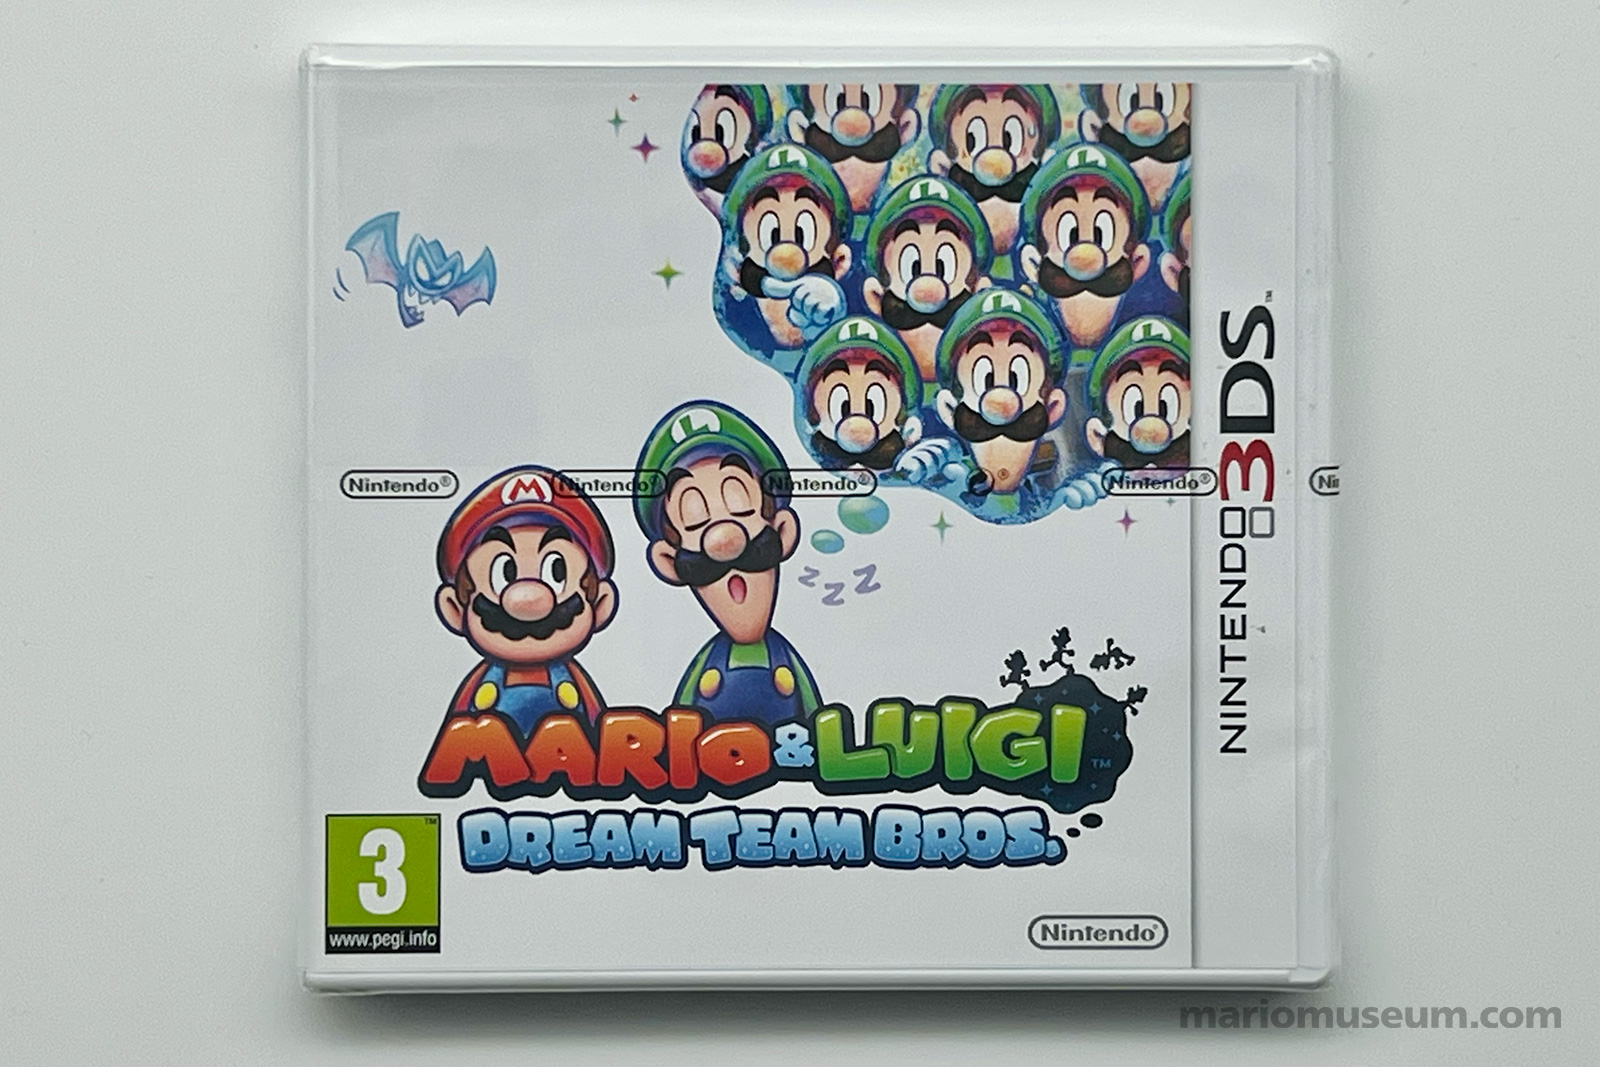 Mario & Luigi Dream Team Bros., 3DS